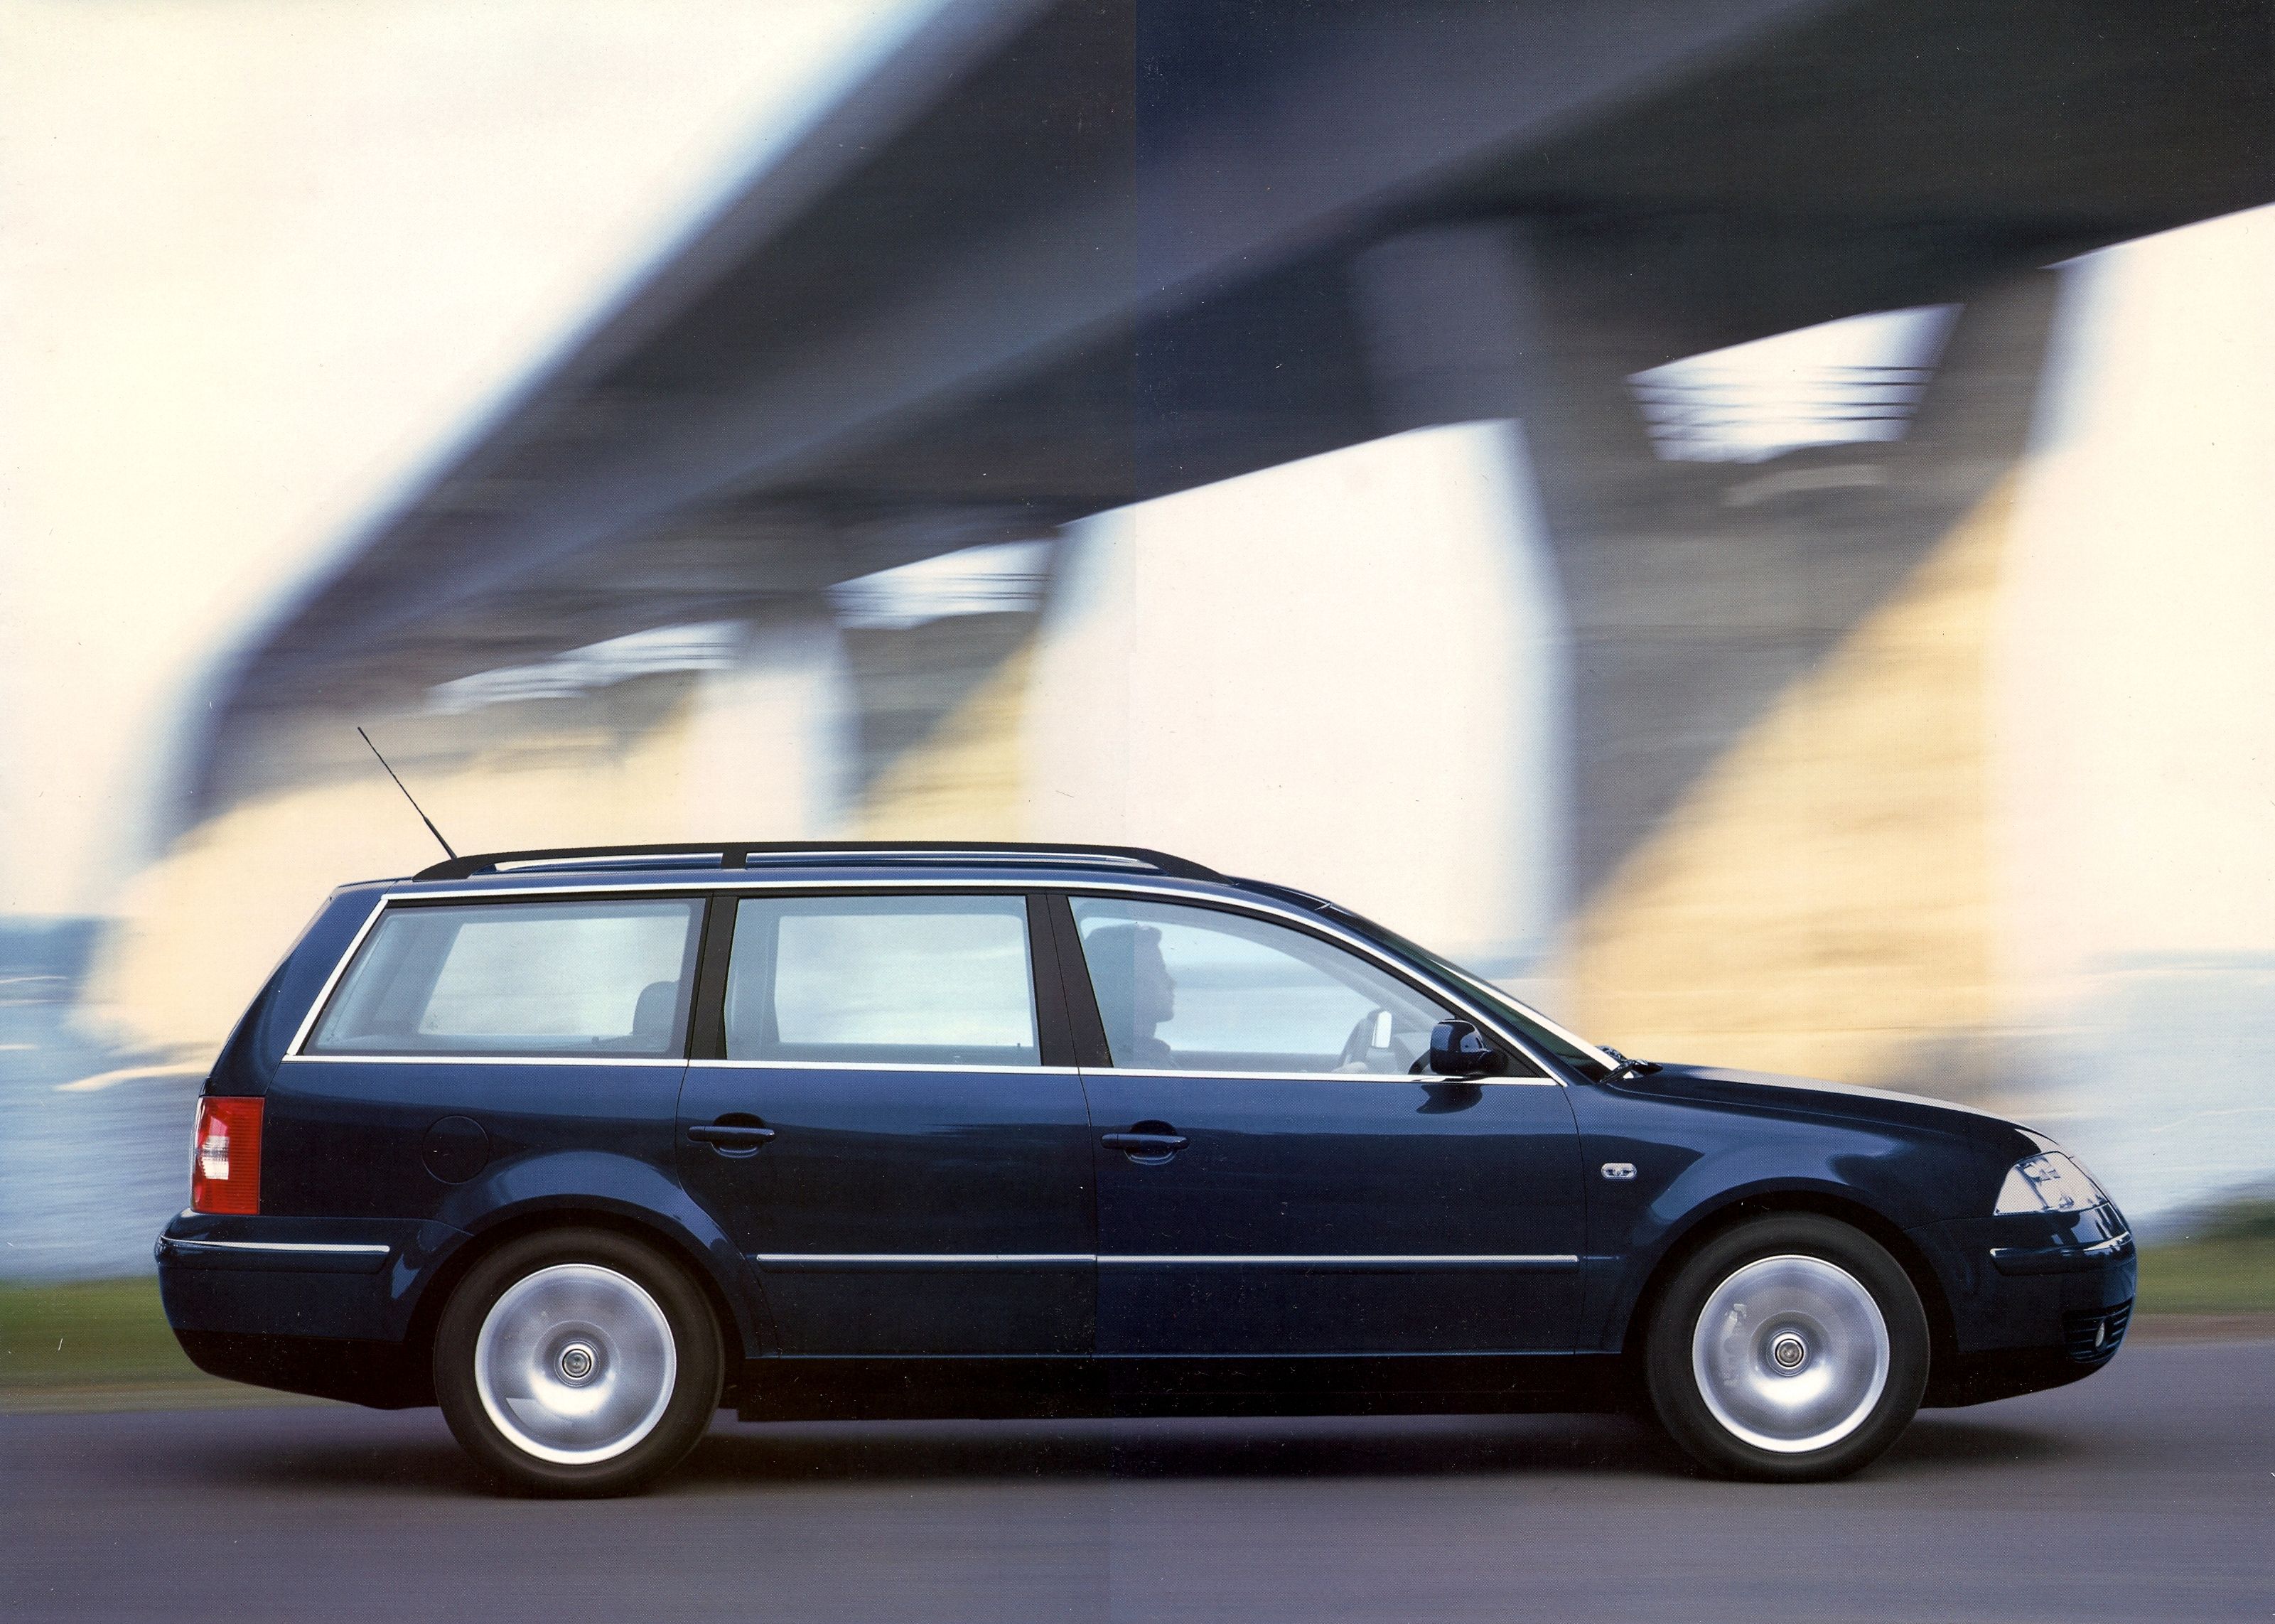 Фольксваген пассат 5 универсал. Volkswagen Passat универсал 2000. Volkswagen Passat b5 2005 универсал. VW Passat b5 Wagon. Фольксваген Пассат универсал 2005.